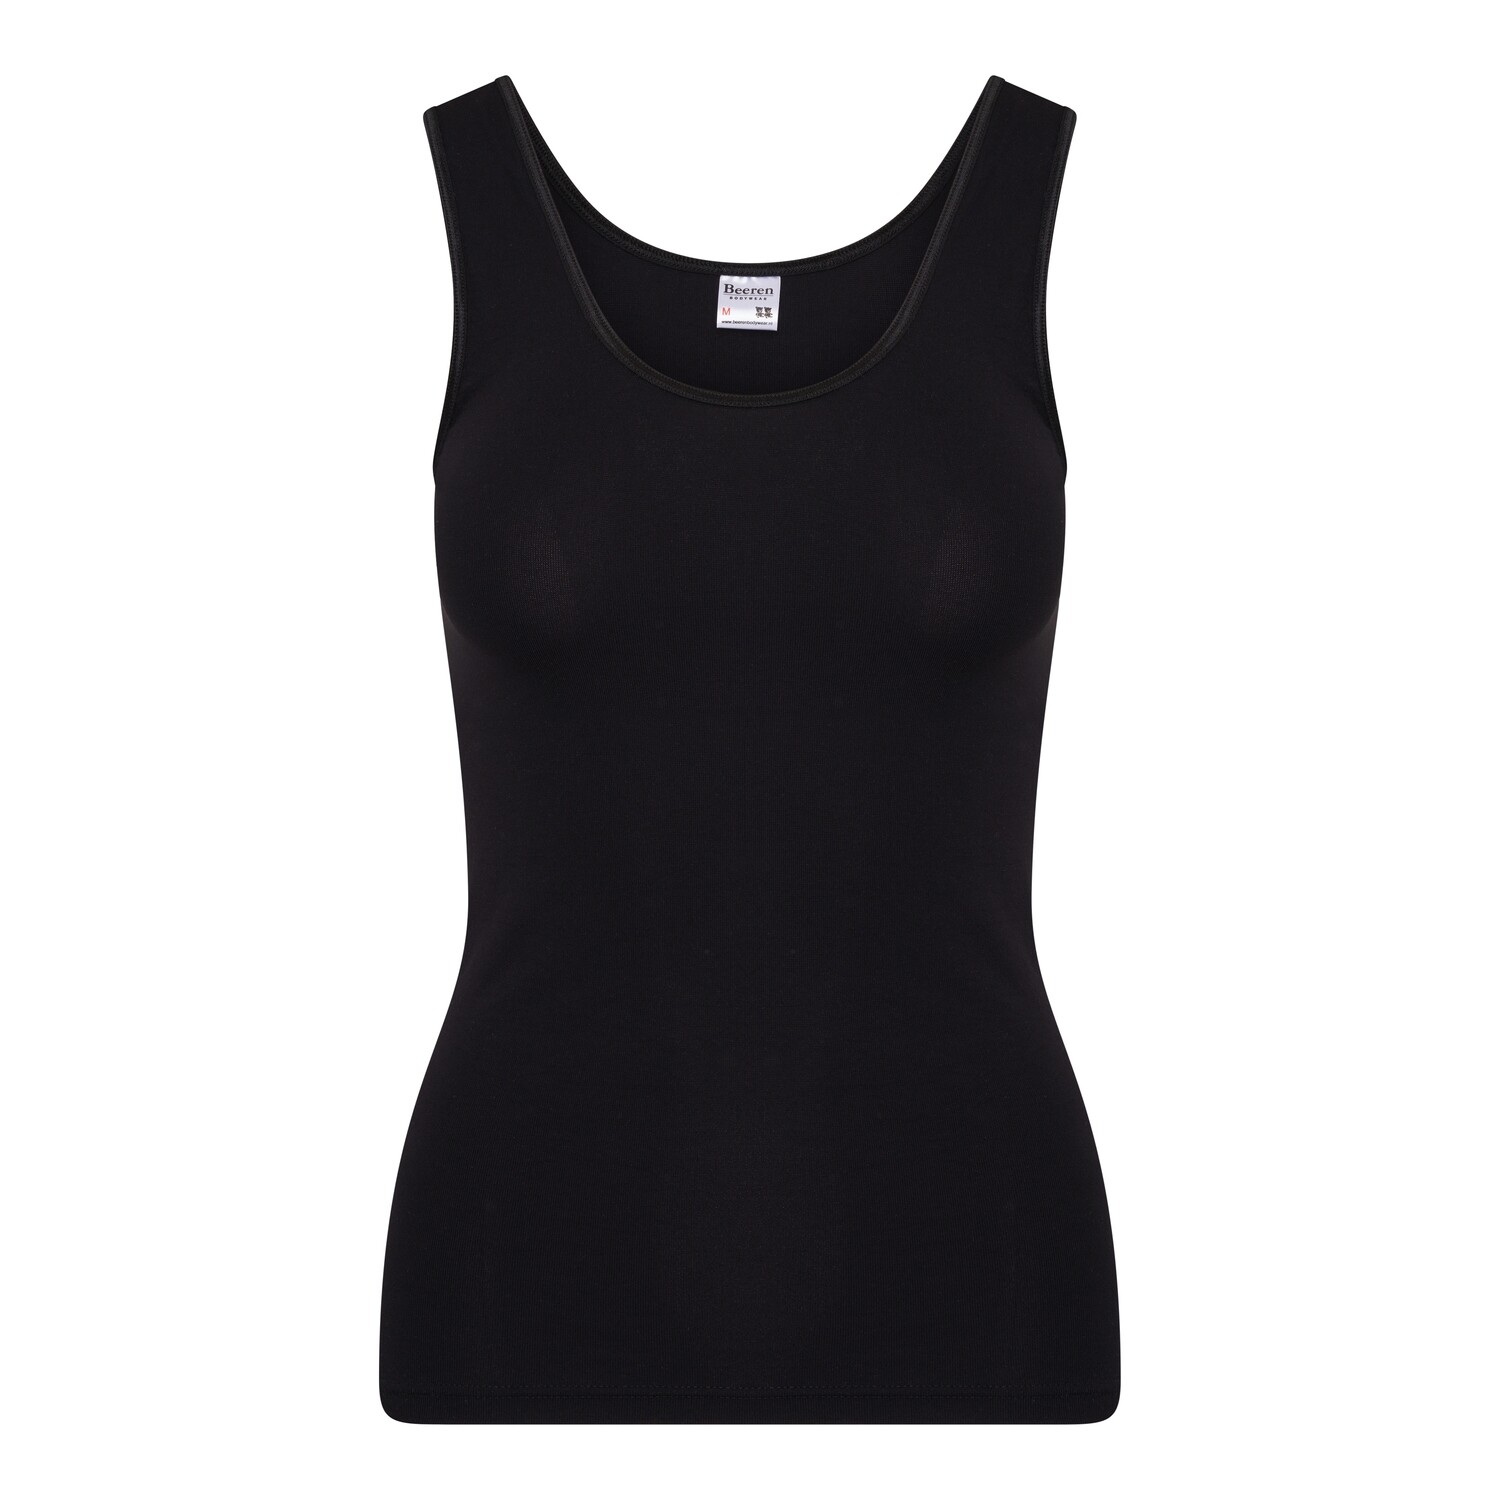 (07-111) Dames hemd Young zwart XL